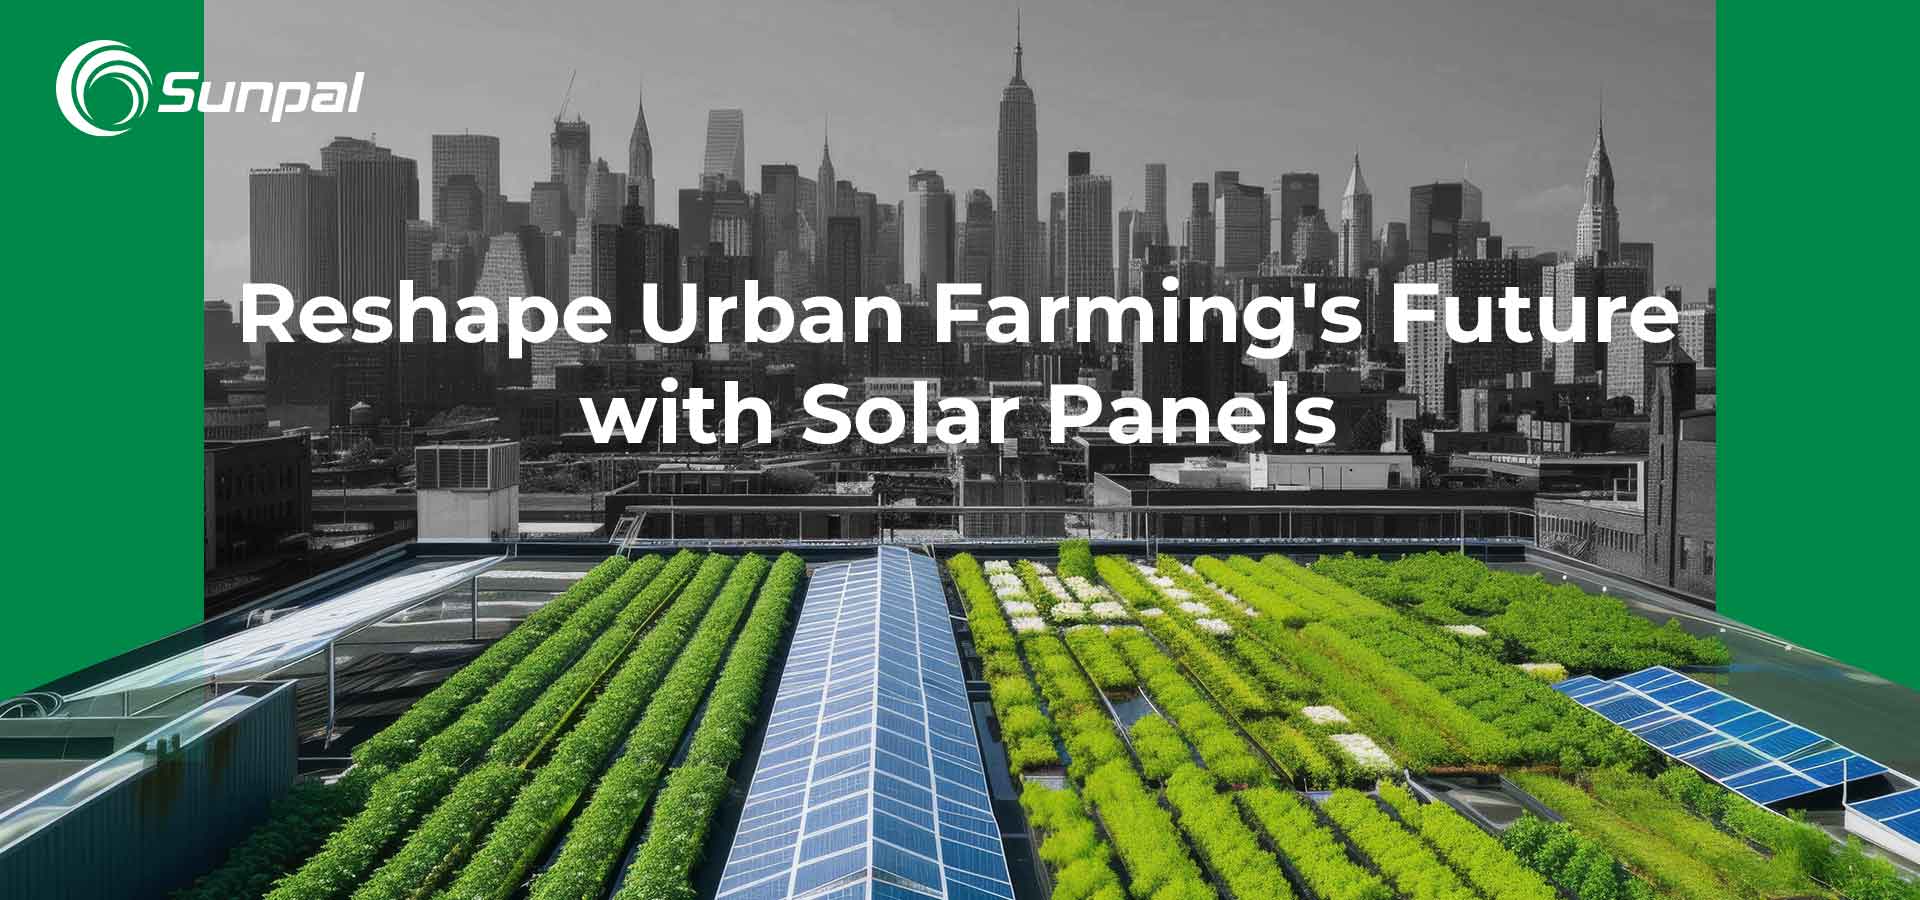 Telhados solares: remodelando o futuro da agricultura urbana